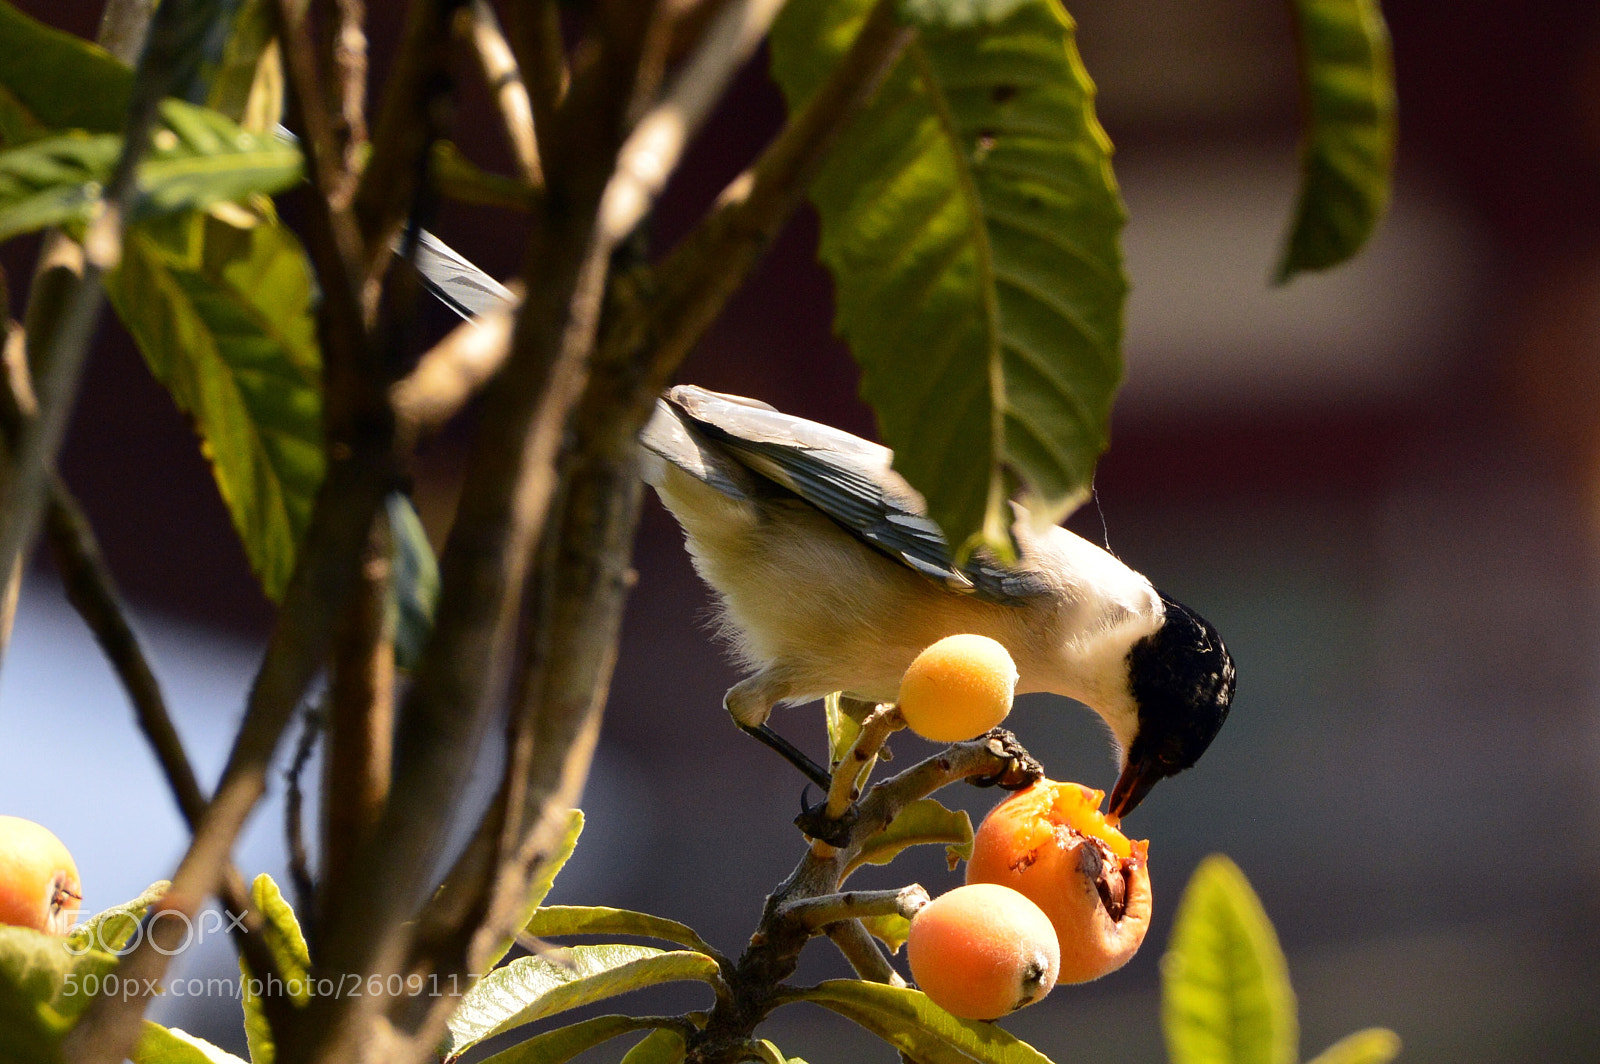 Nikon D3200 sample photo. Bird eating fruit photography